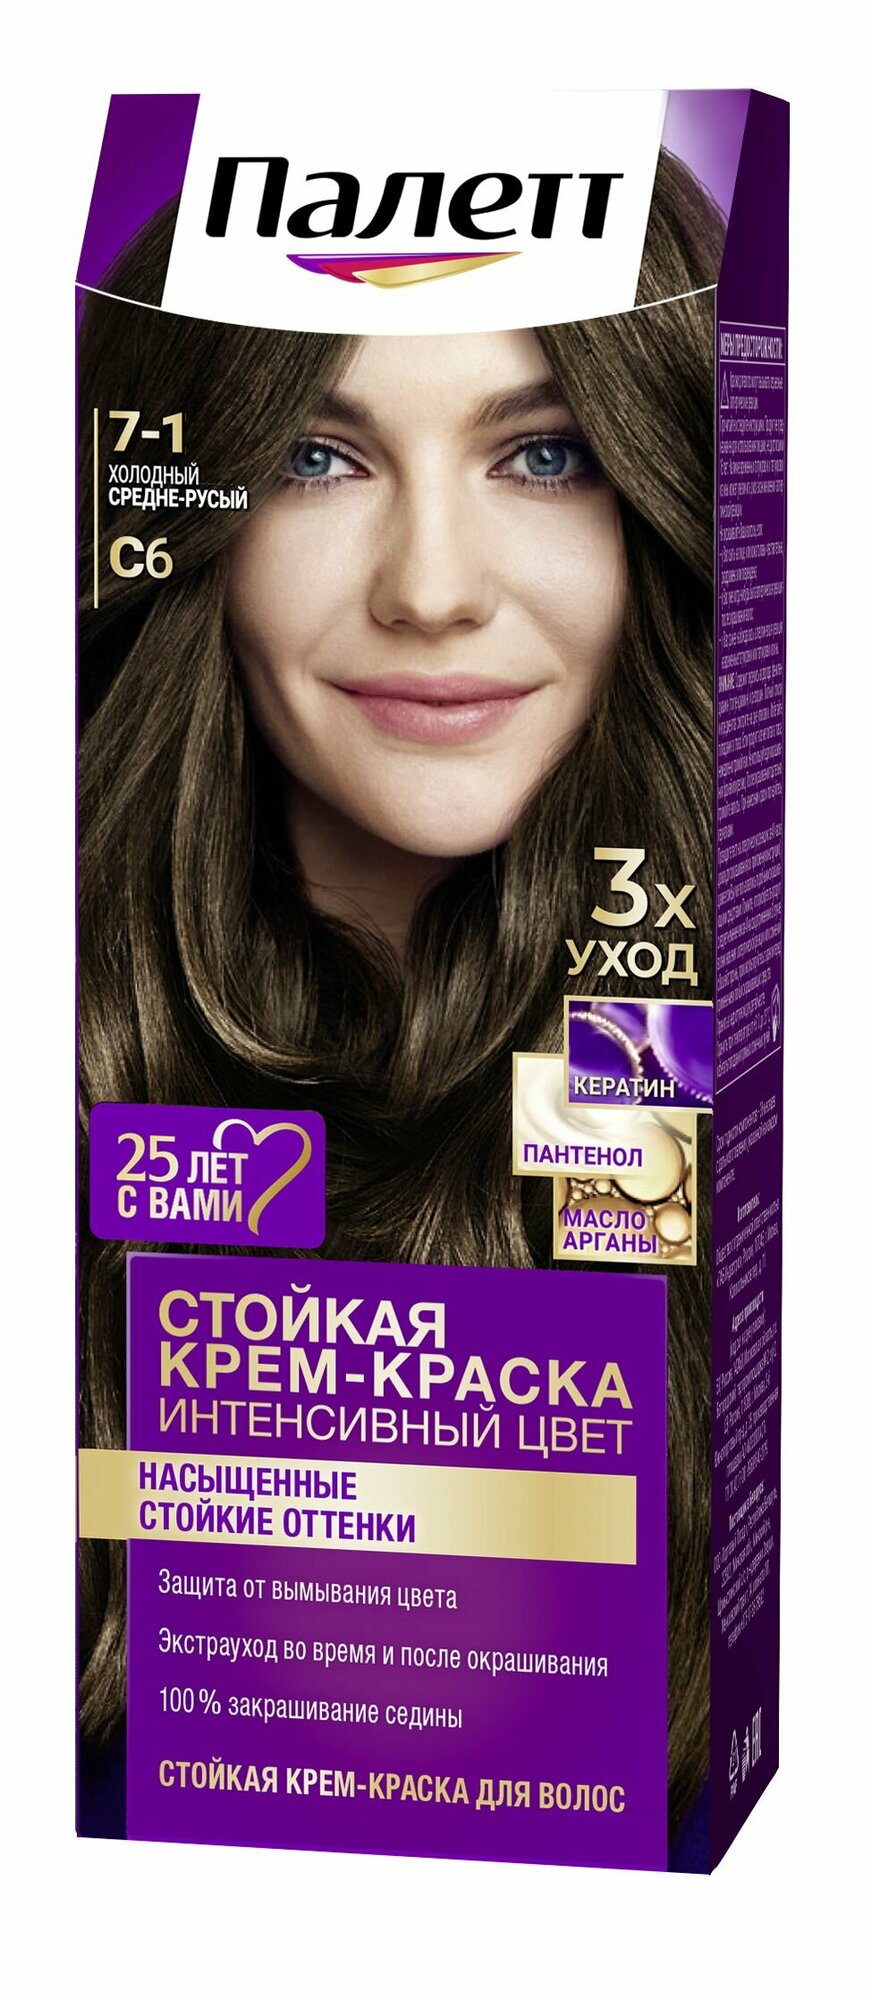 Стойкая крем-краска для волос Palette Палетт № С6 Холодный средне-русый